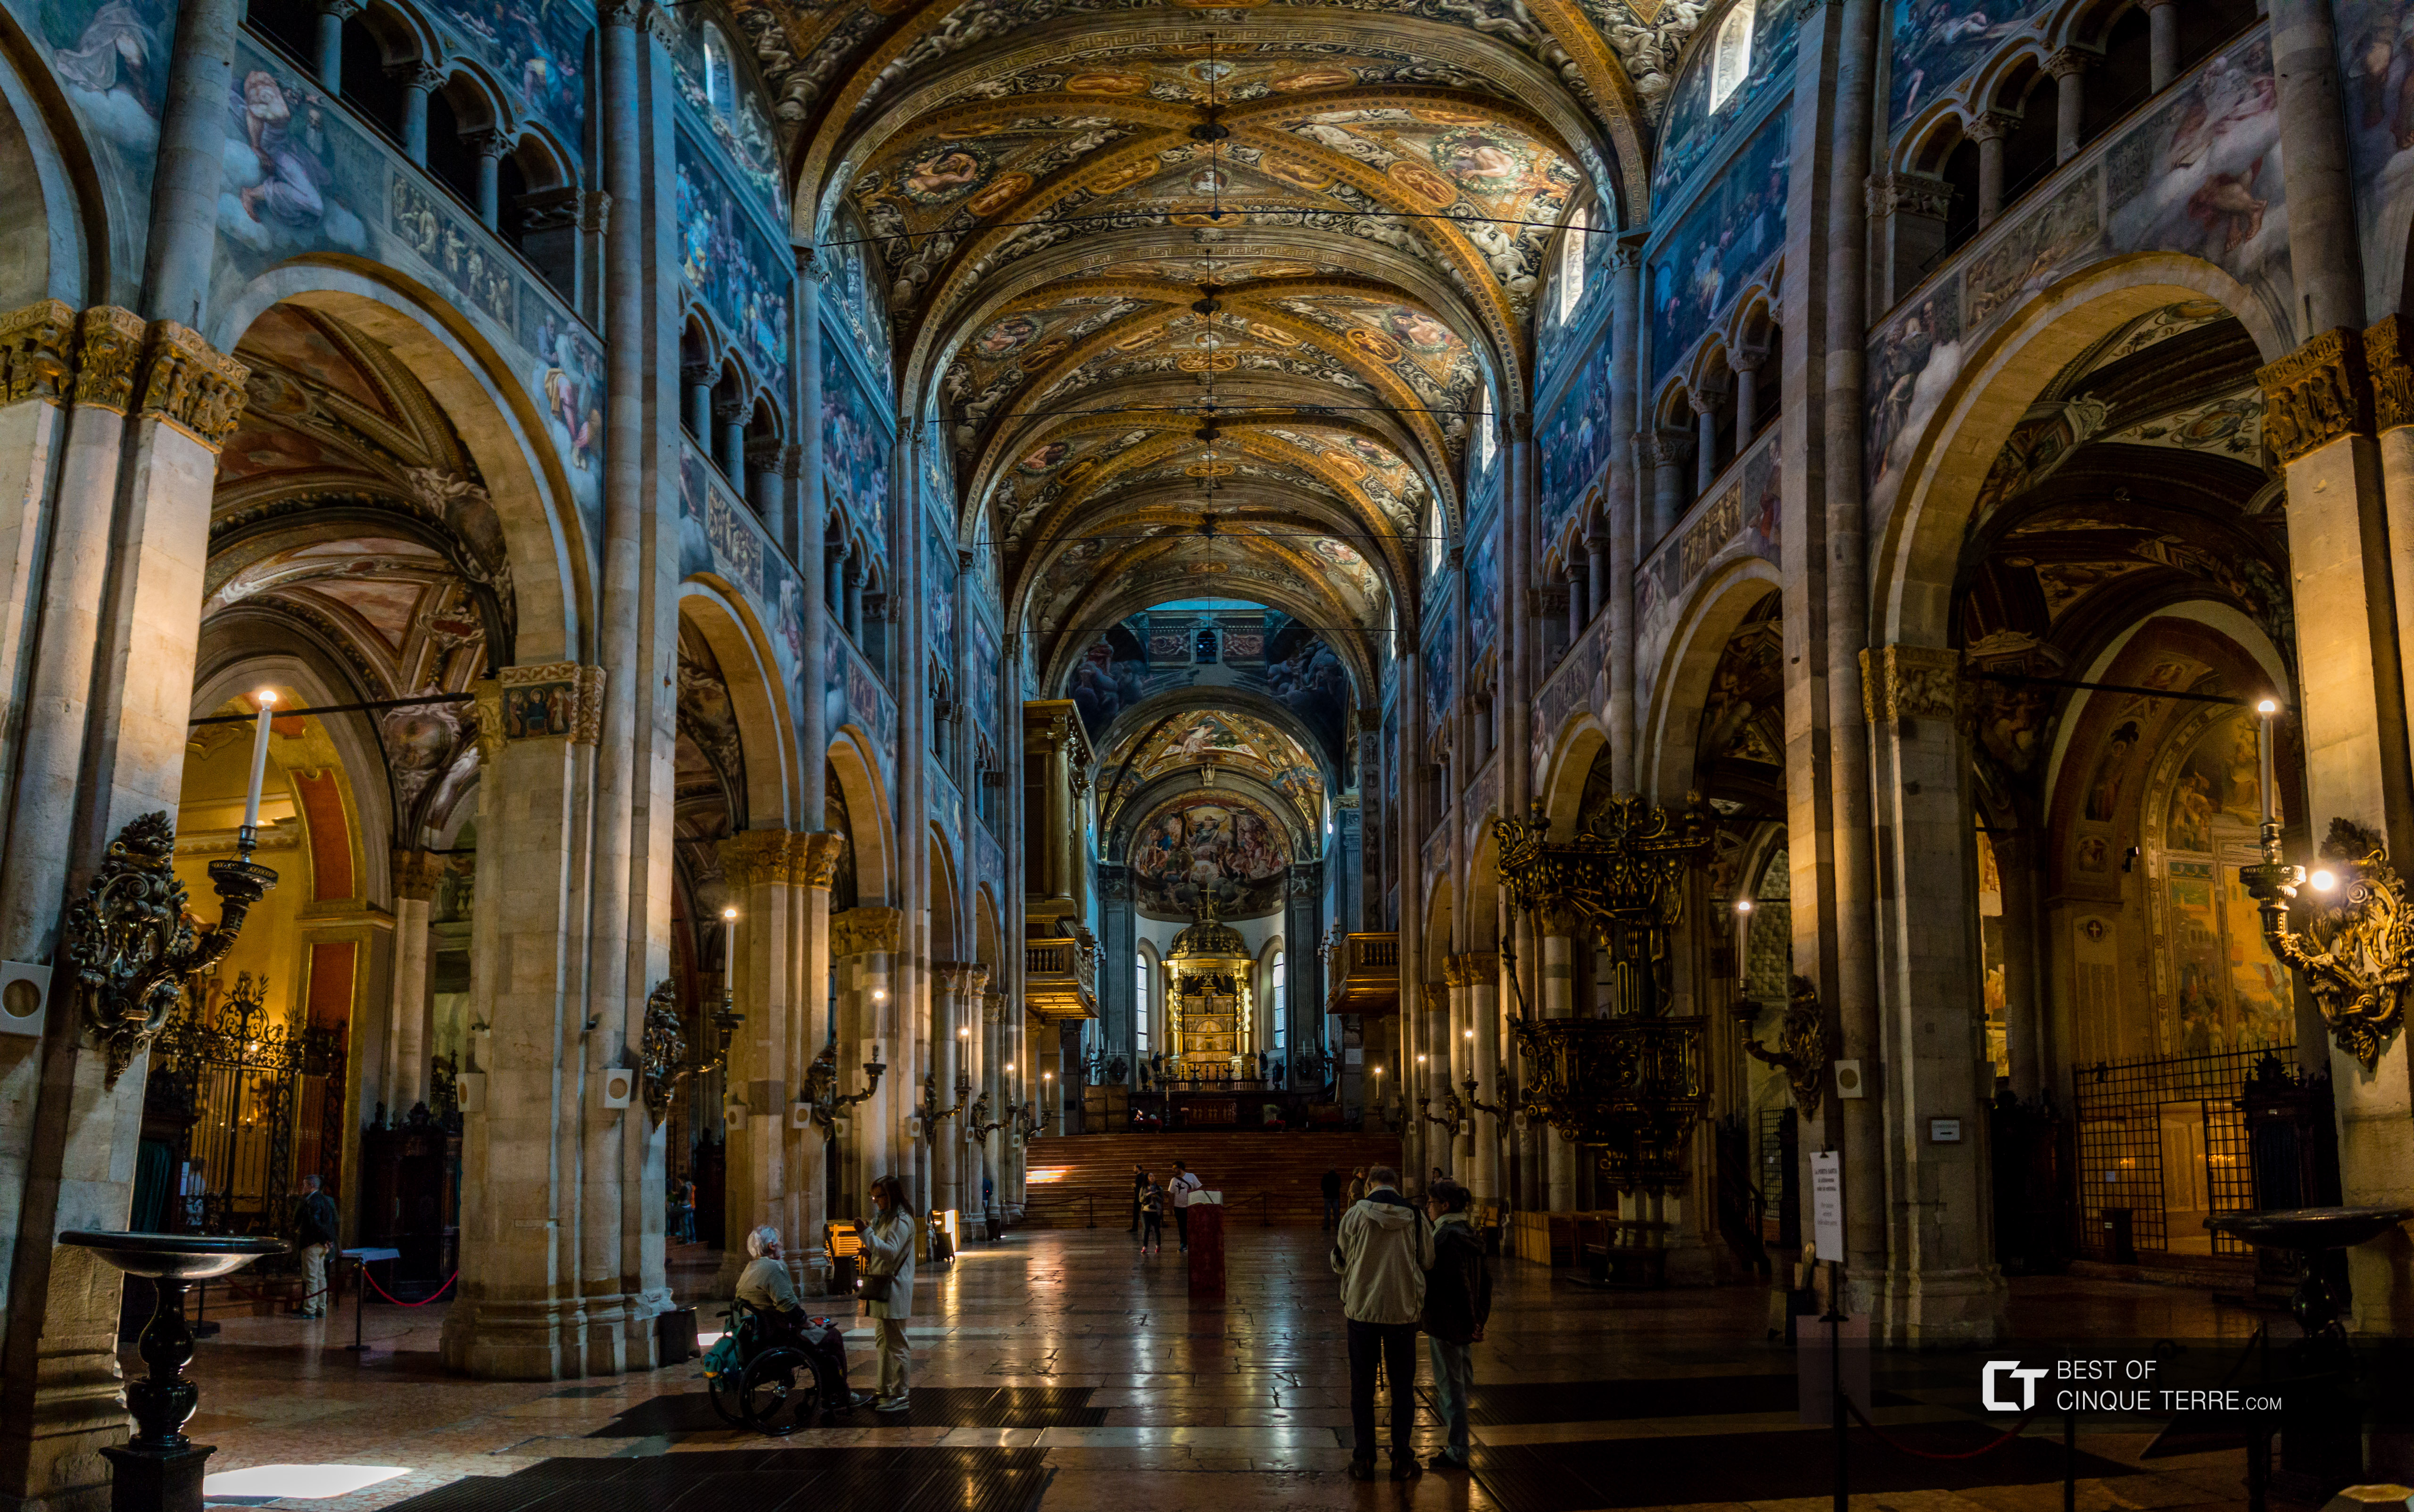 El interior de la Catedral, Parma, Italia